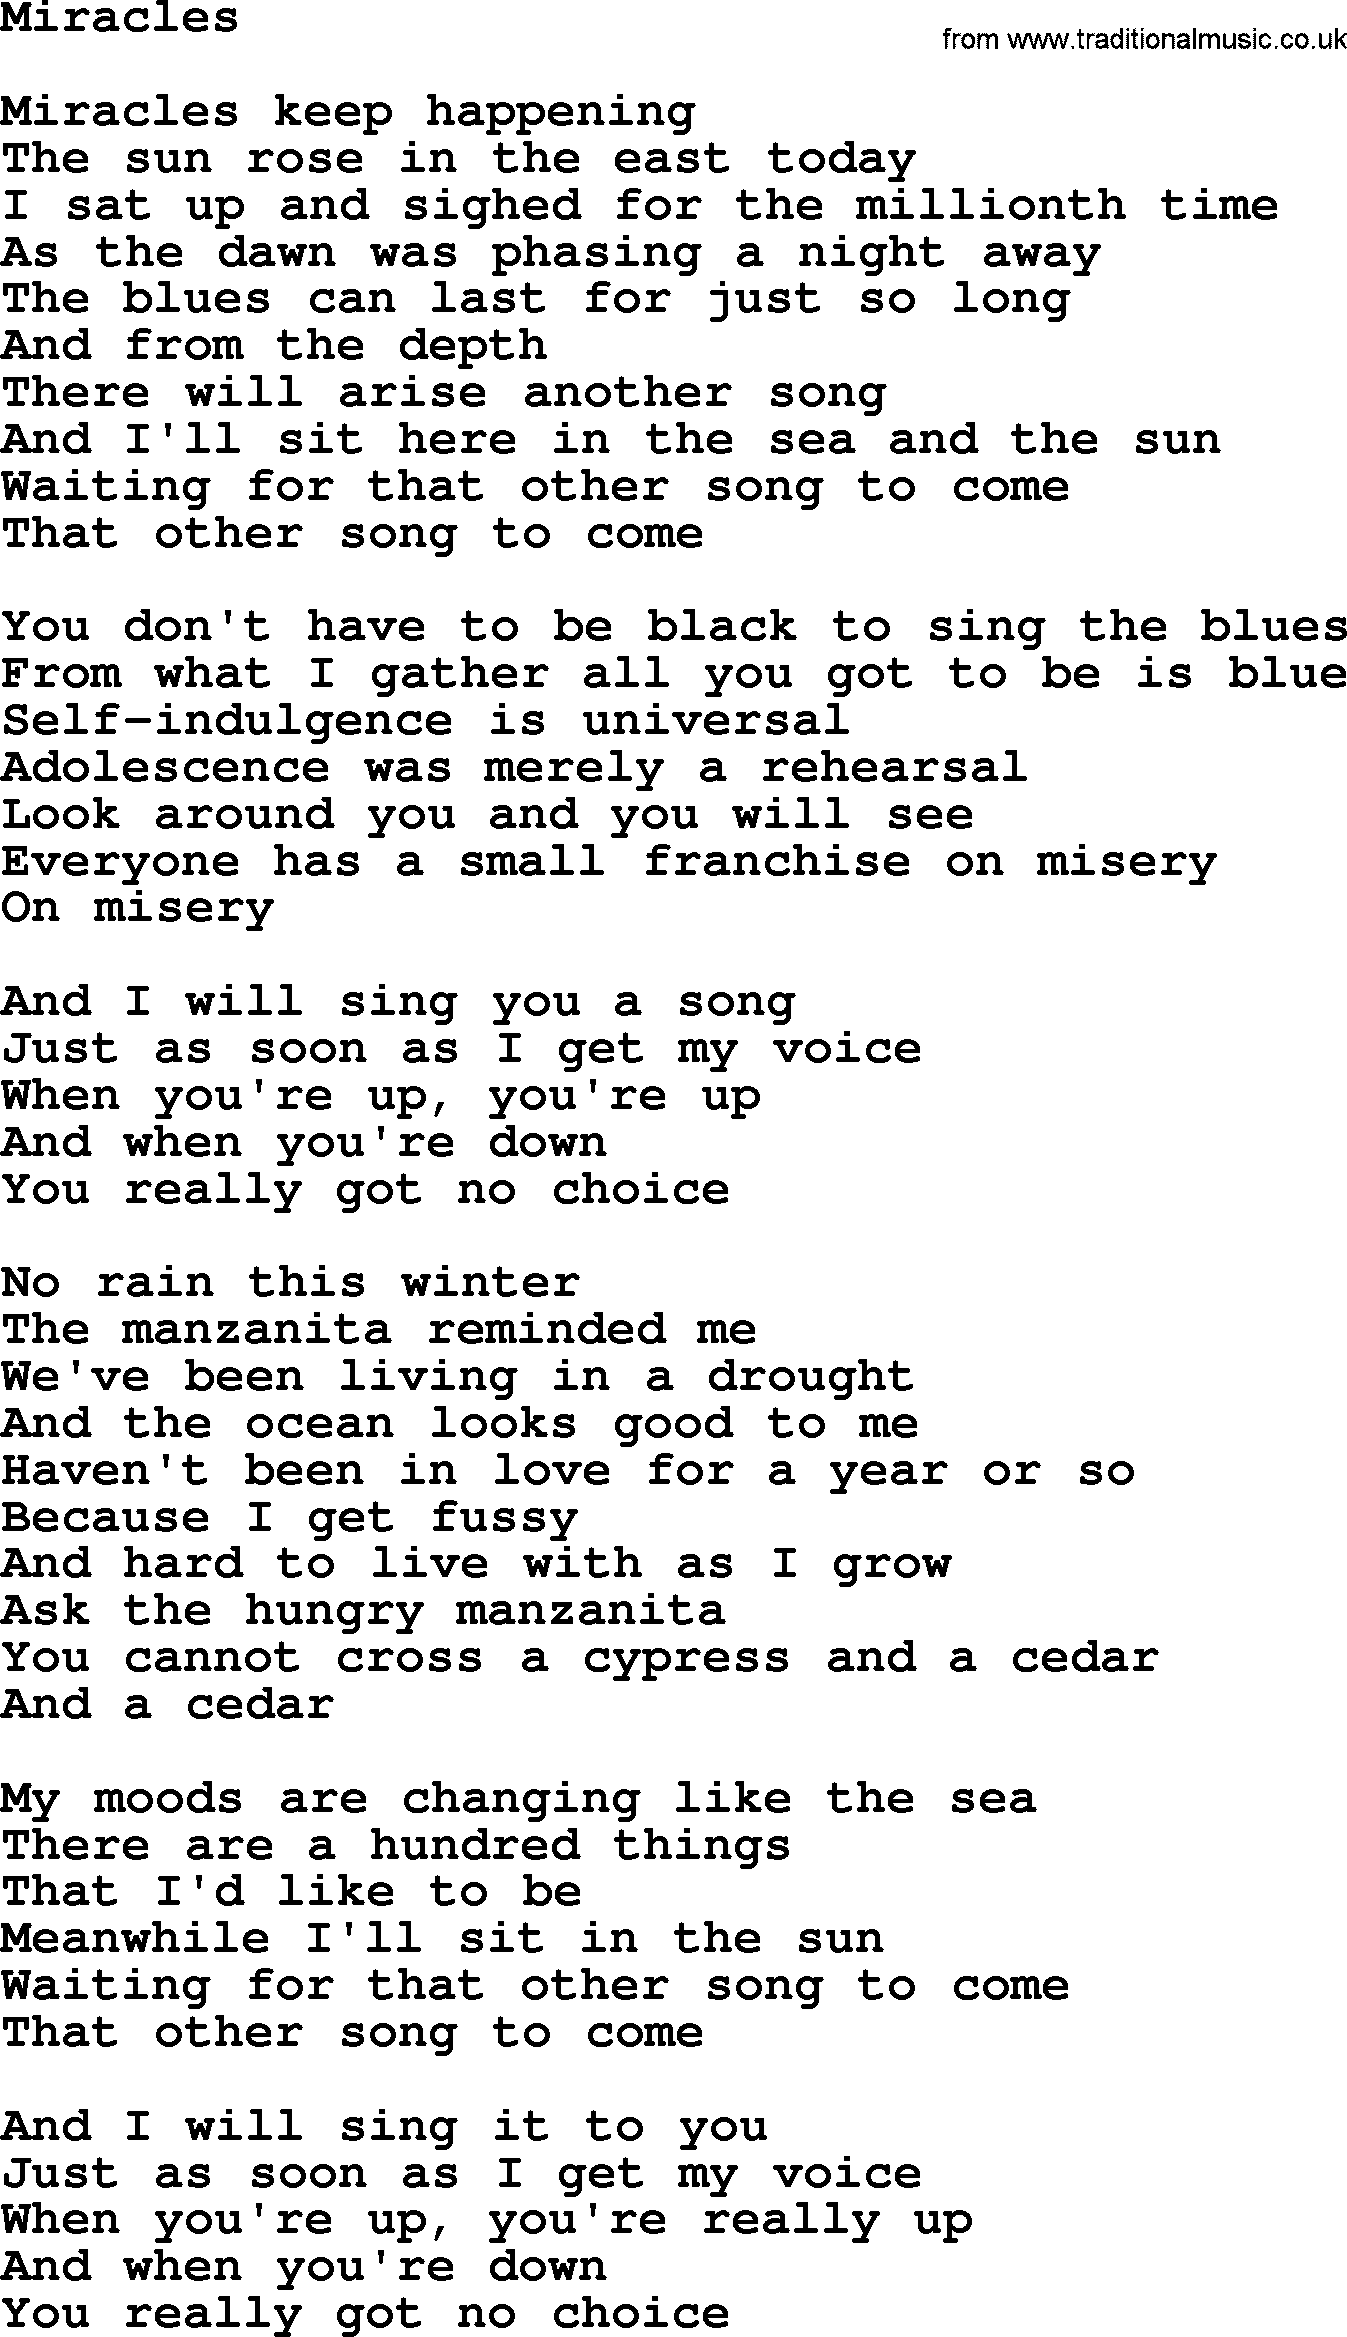 Joan Baez song Miracles, lyrics